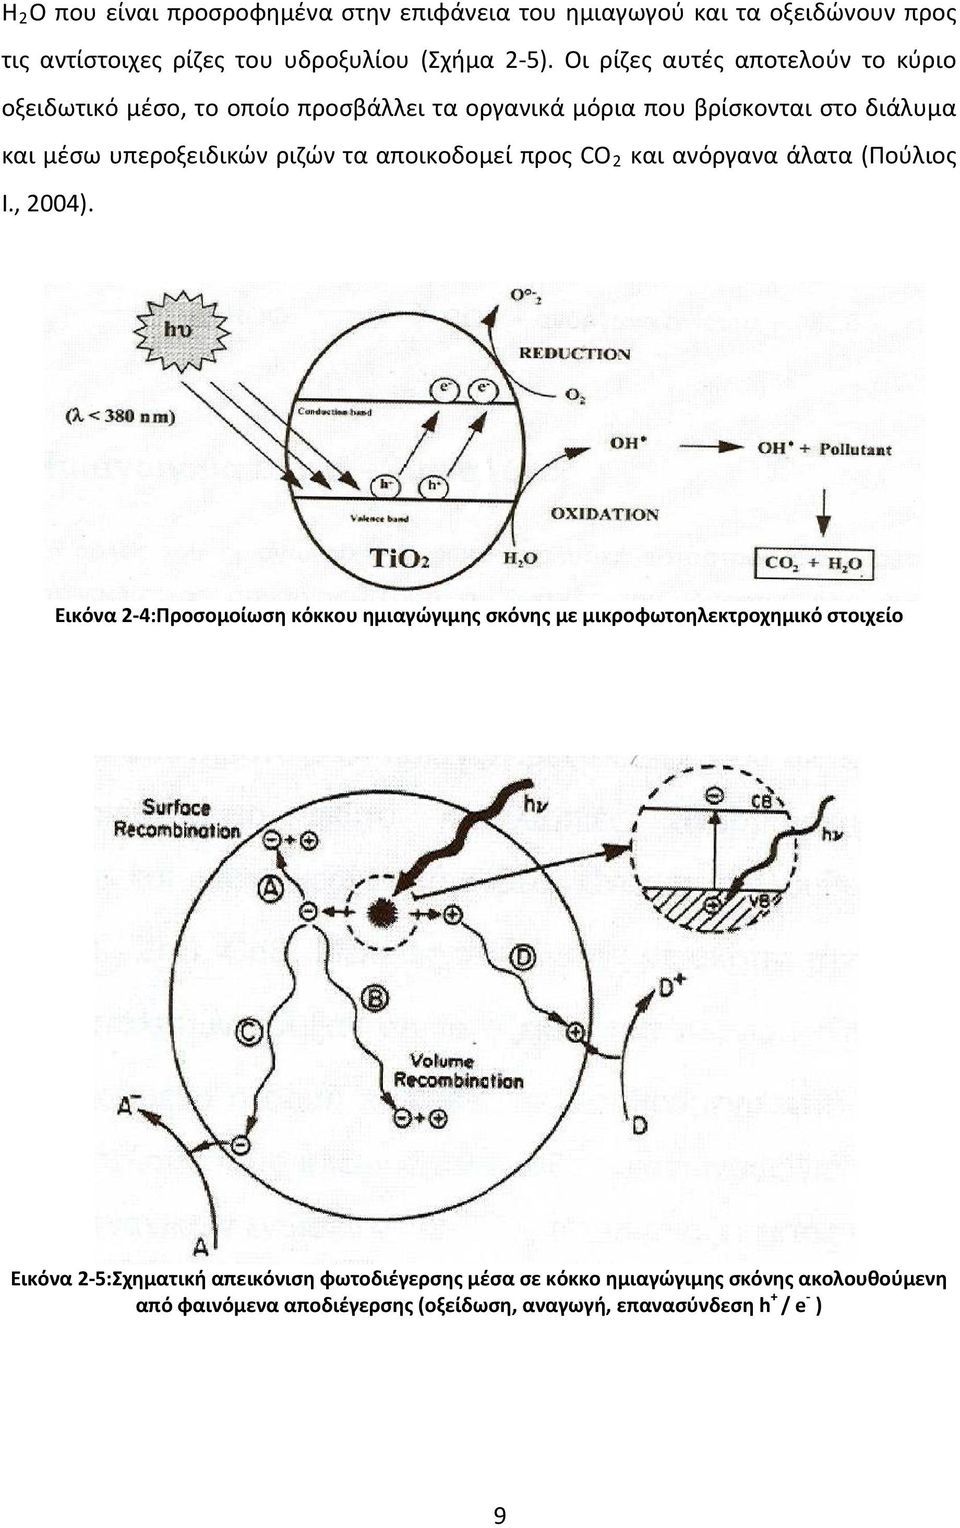 τα αποικοδομεί προς CO 2 και ανόργανα άλατα (Πούλιος Ι., 2004).